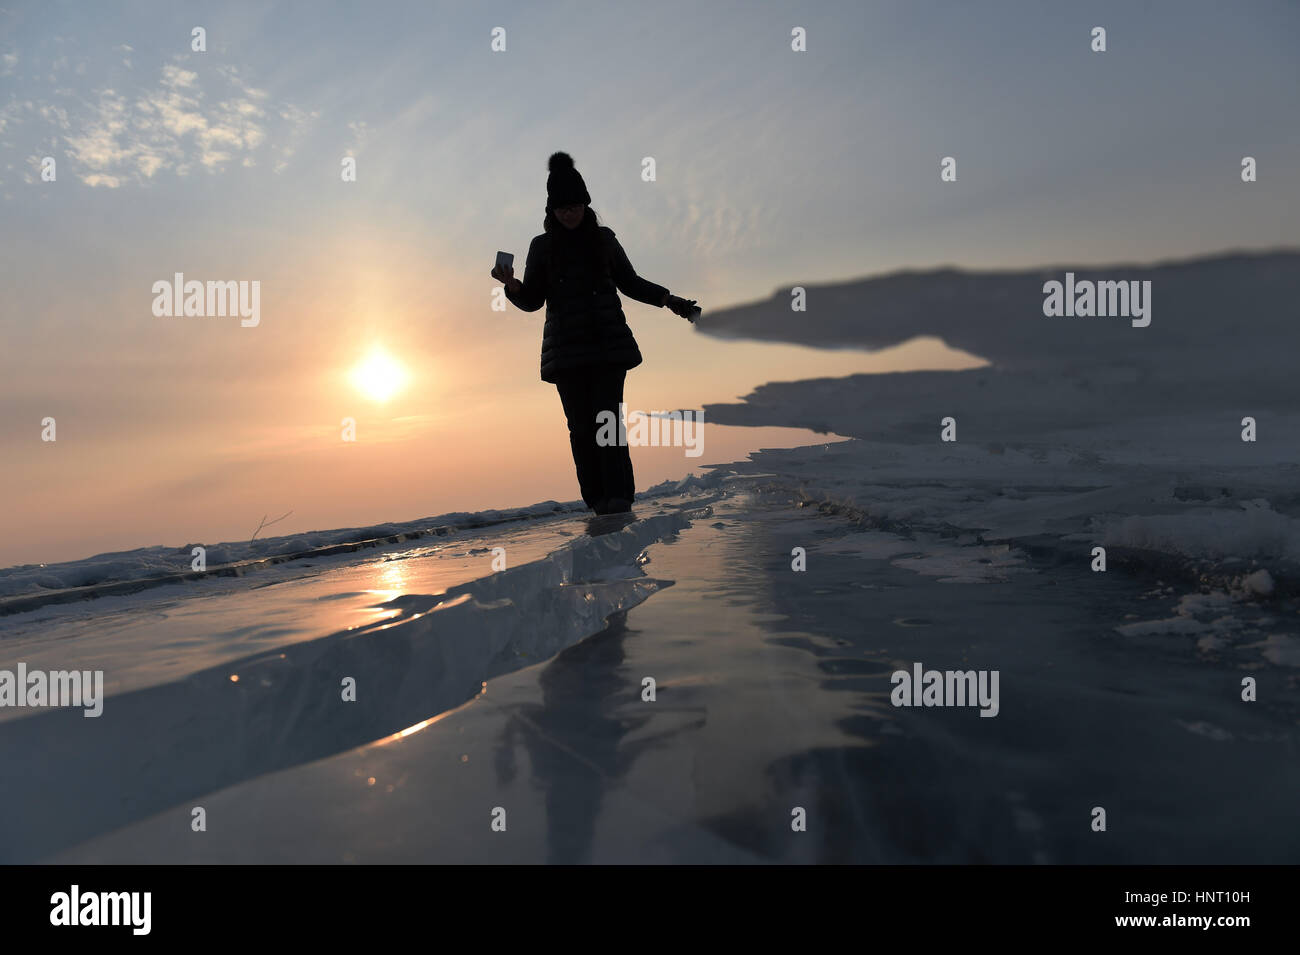 Mishan, Jixi Ville de la province du nord-est de la Chine. Feb 15, 2017. Un visiteur regarde banc de glace sur le lac Xingkai, lac frontière entre la Chine et la Russie, dans la région de Jixi Ville de la province du nord-est de la Chine, le 15 février 2017. Credit : Wang Jianwei/Xinhua/Alamy Live News Banque D'Images